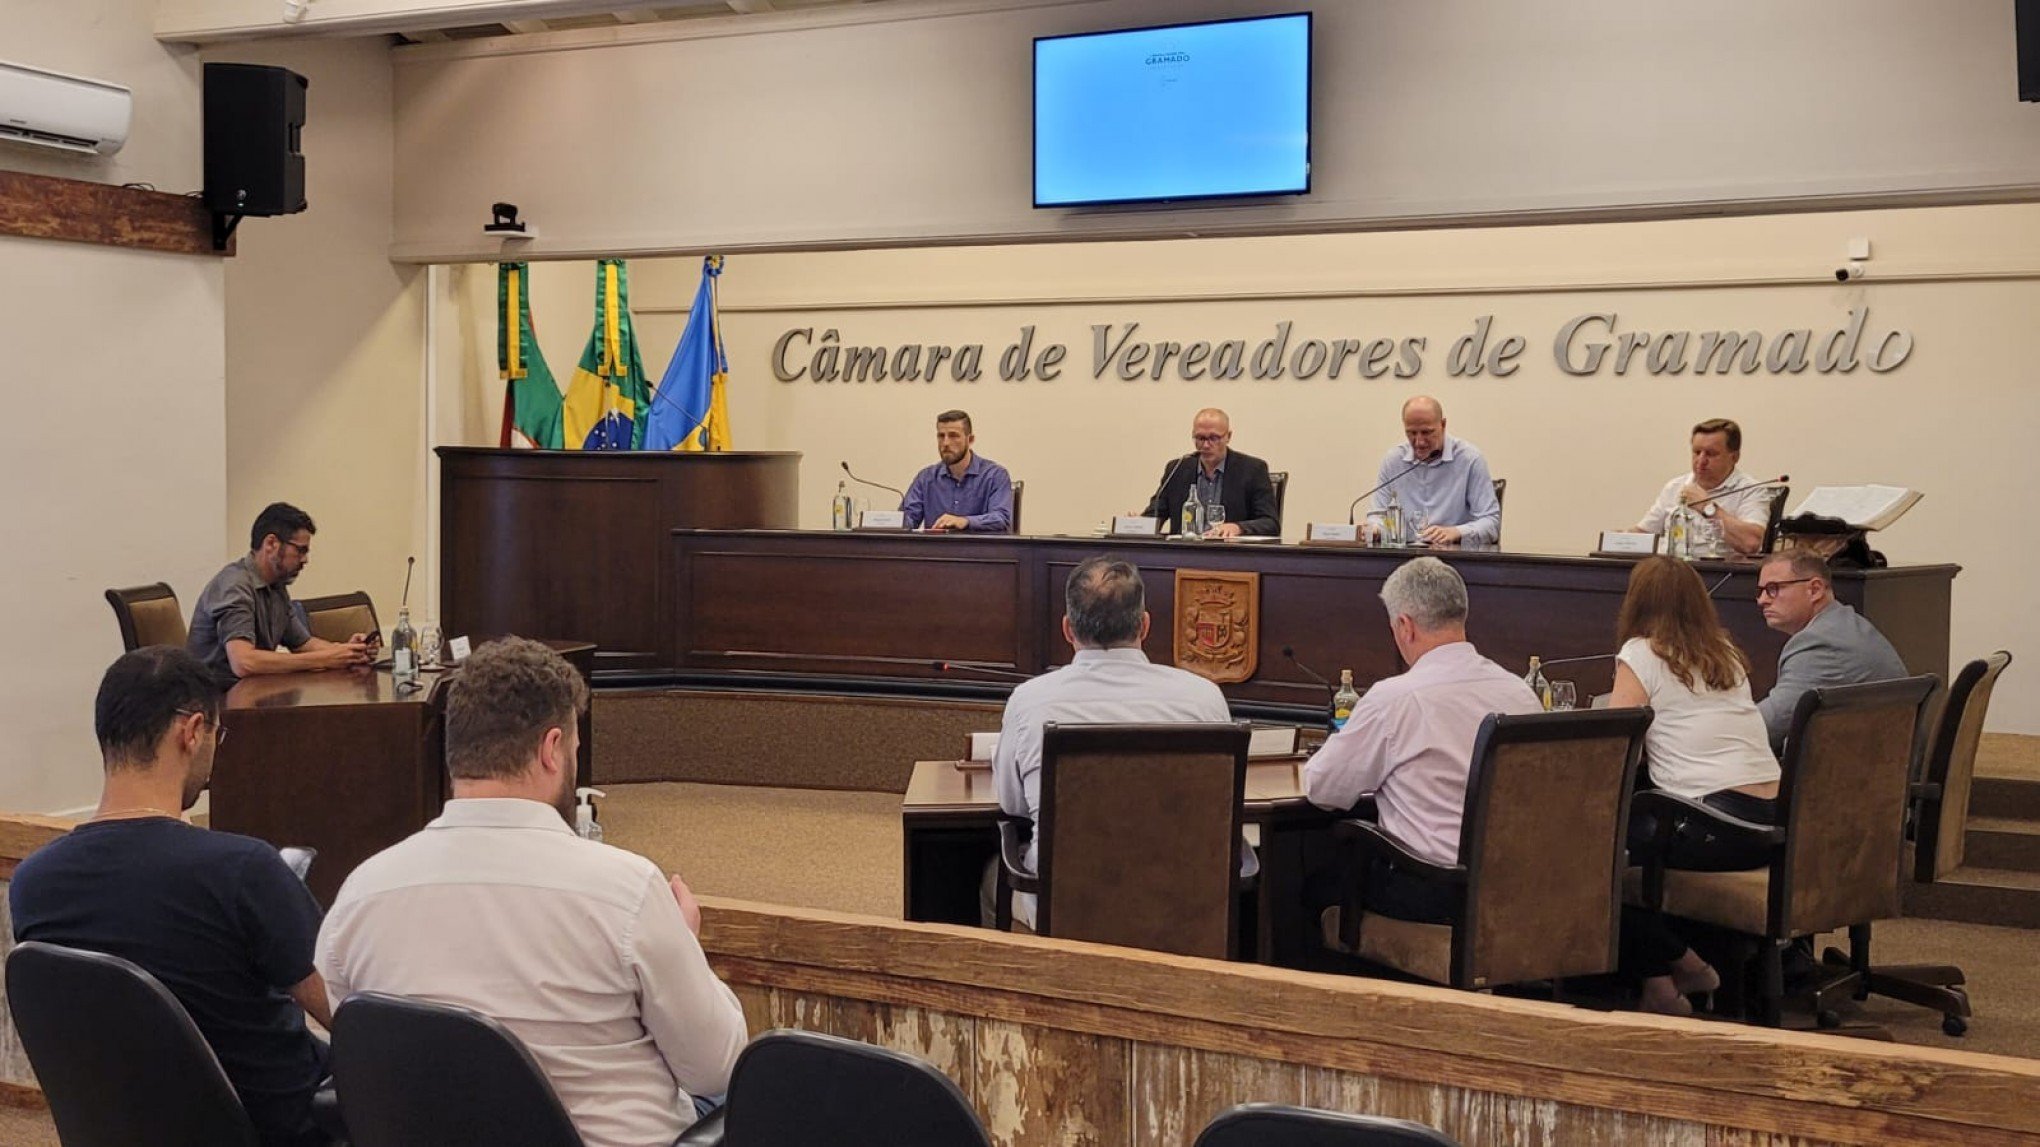 Comissão que irá apurar denúncia contra vereador de Gramado tem mudanças; entenda